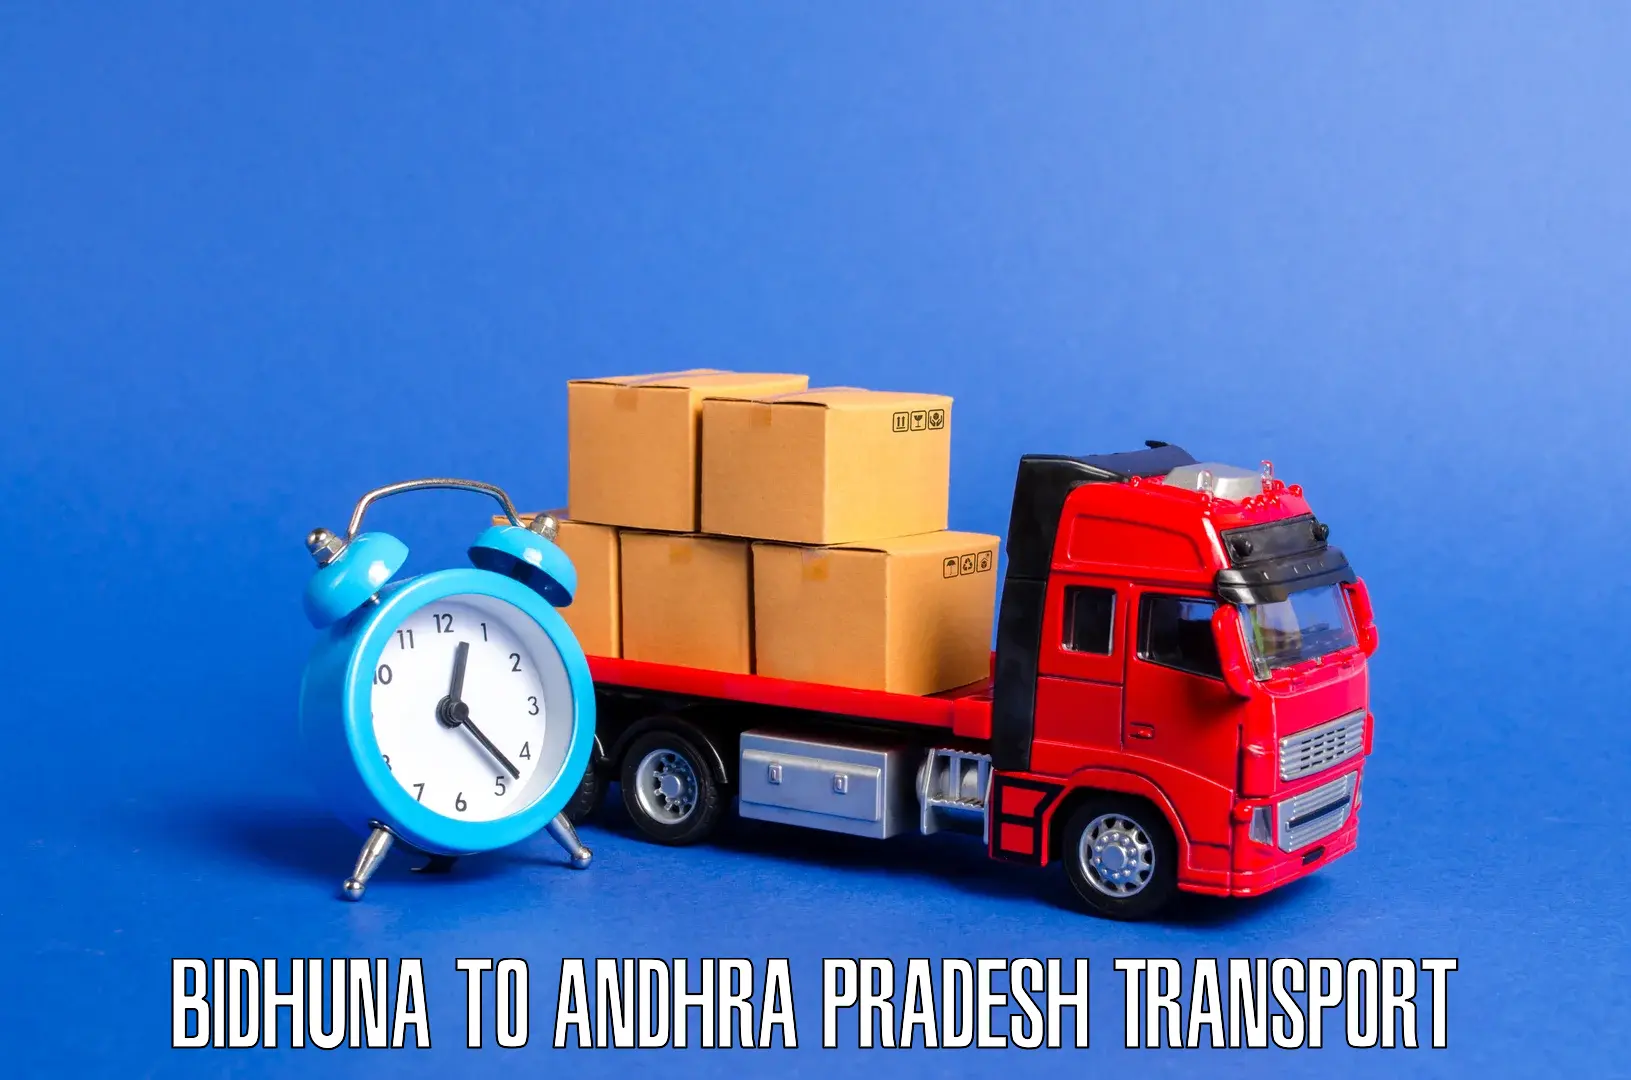 Intercity transport Bidhuna to Bhimavaram